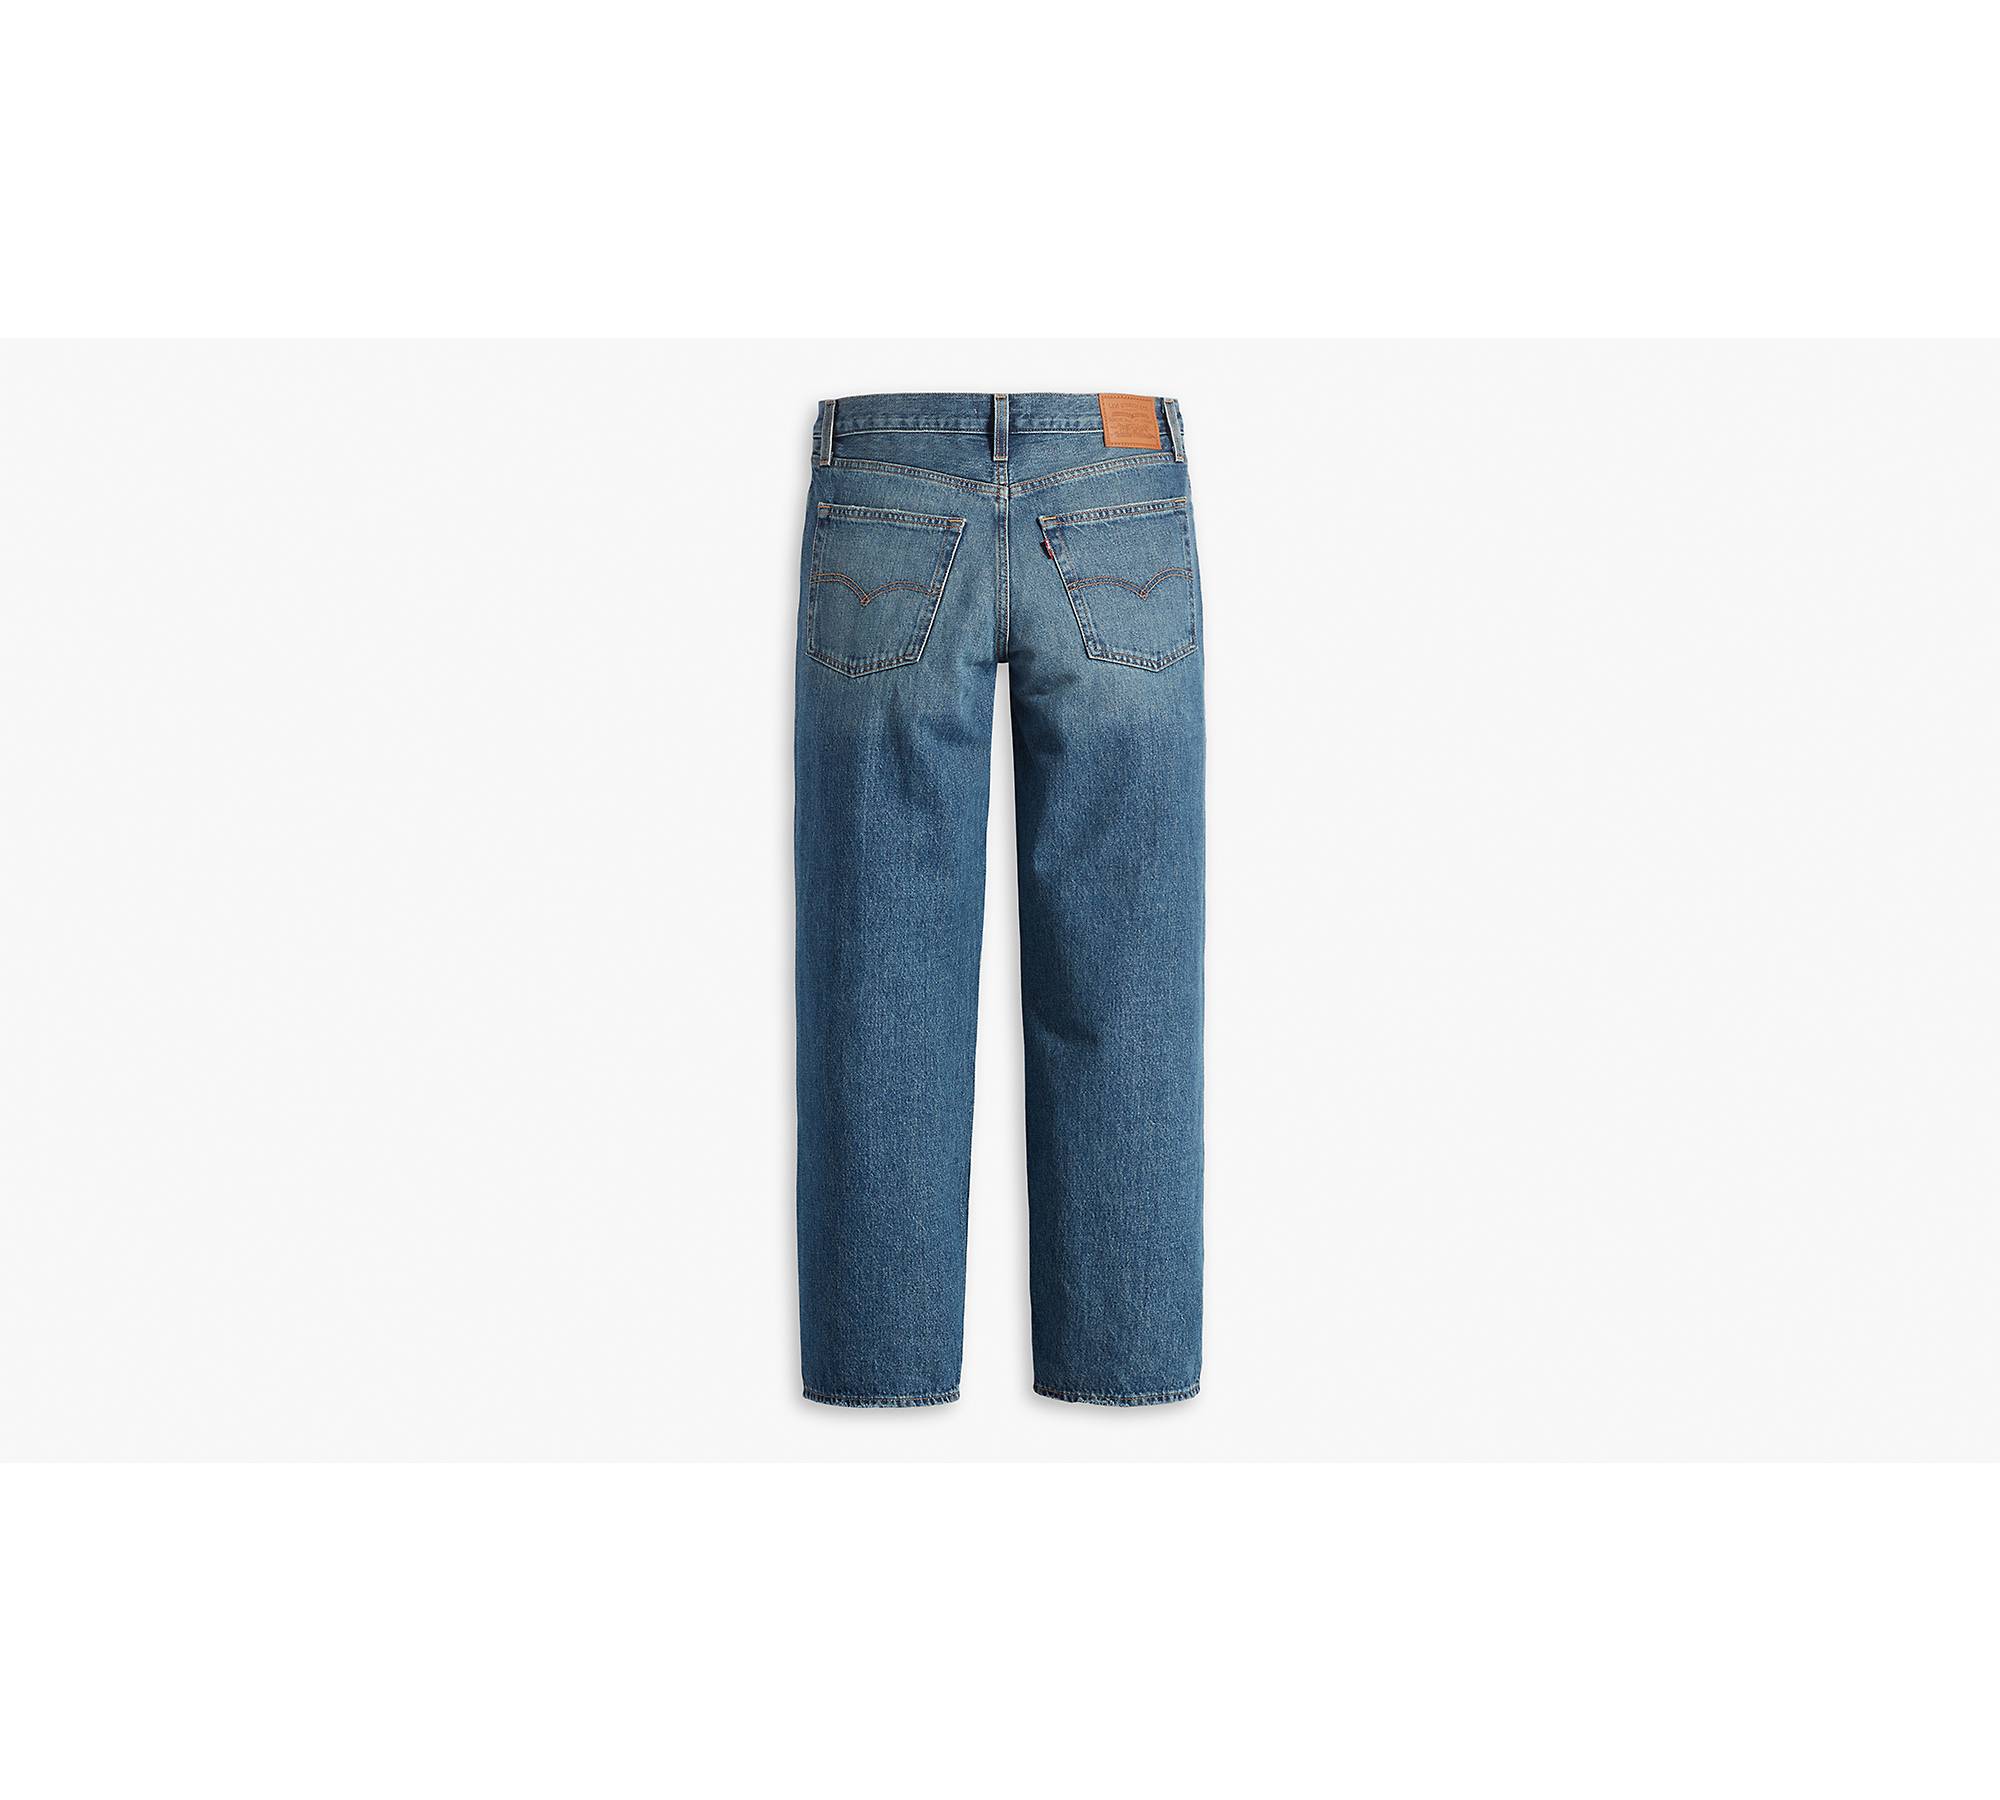 Baggy Dad Jeans - Dark Wash US